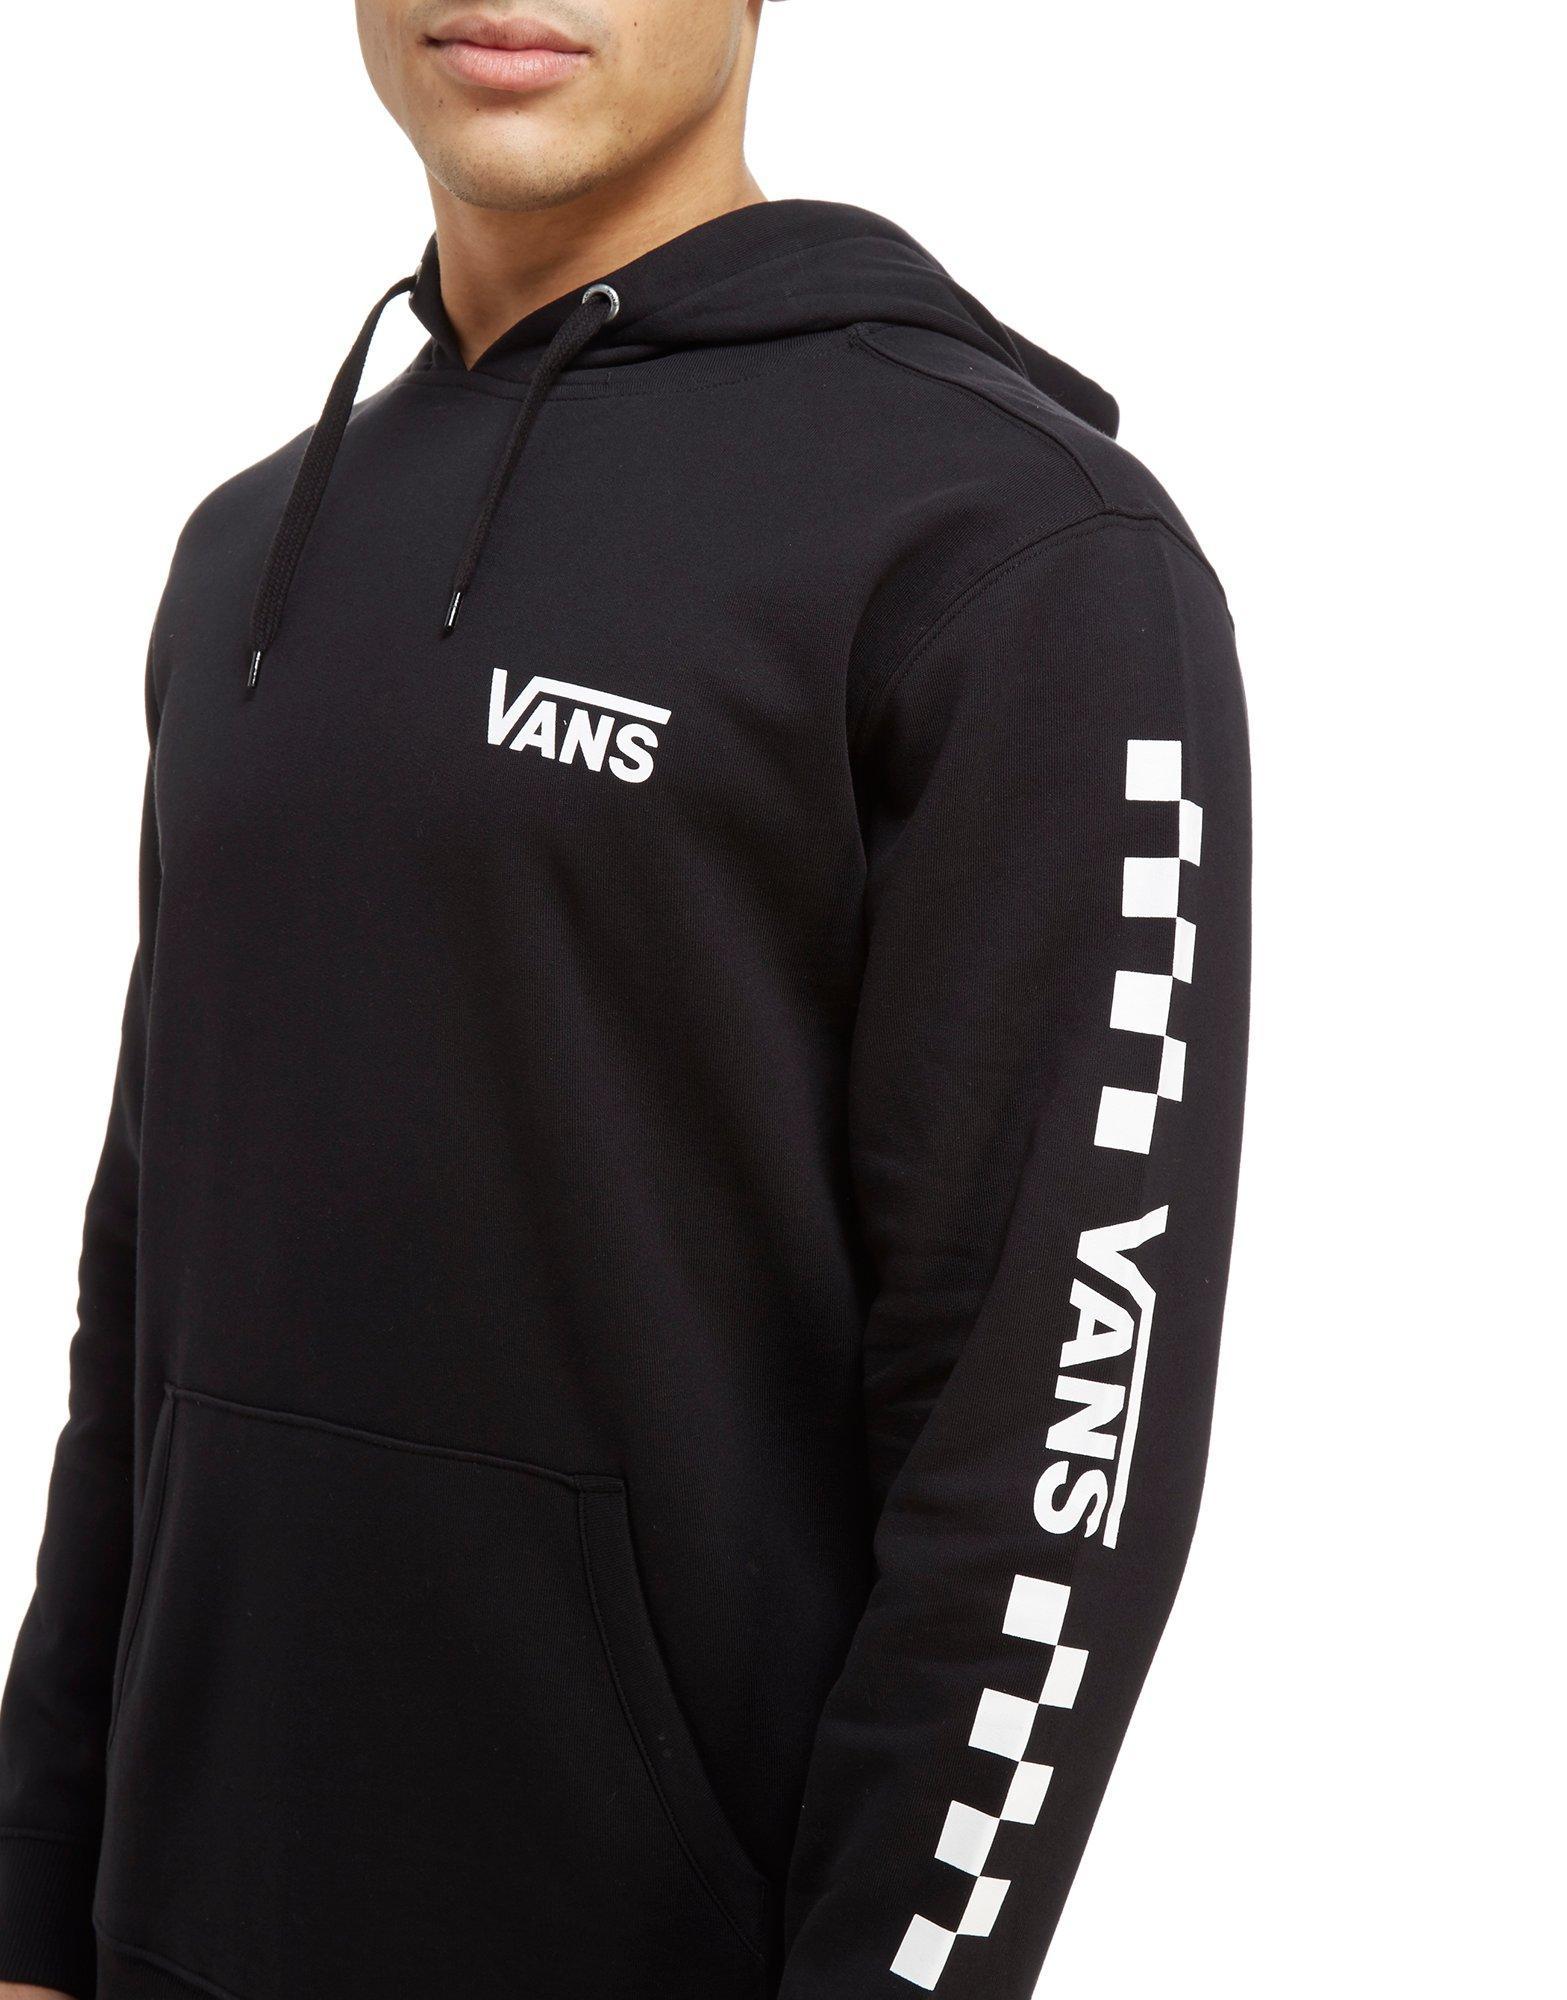 vans overhead checkerboard sleeve hoodie